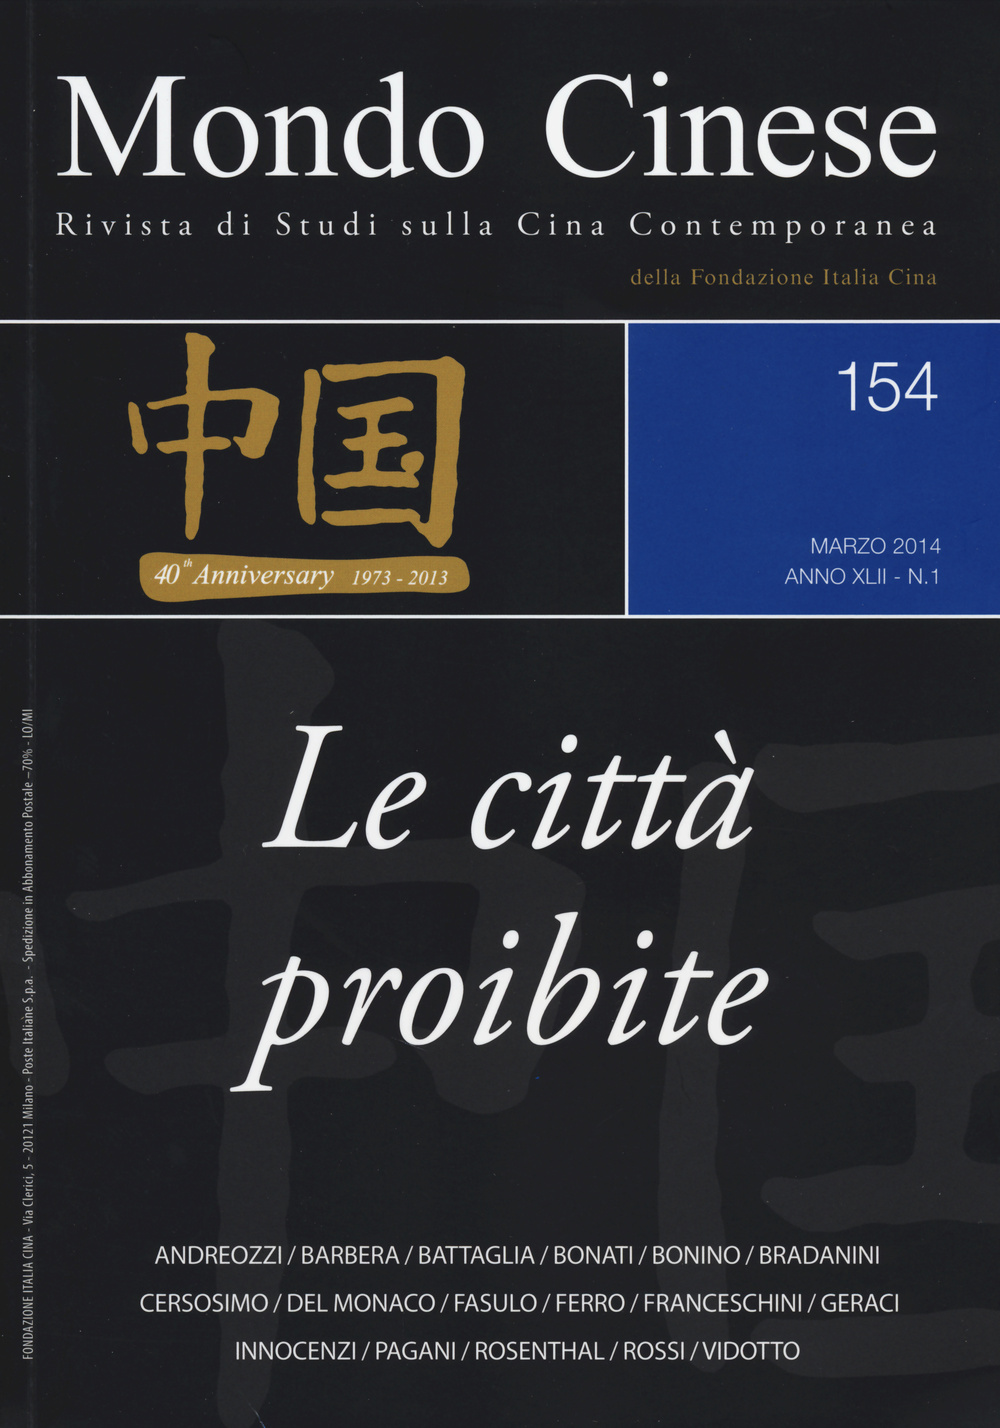 Mondo cinese (2014). Vol. 154: Le città proibite